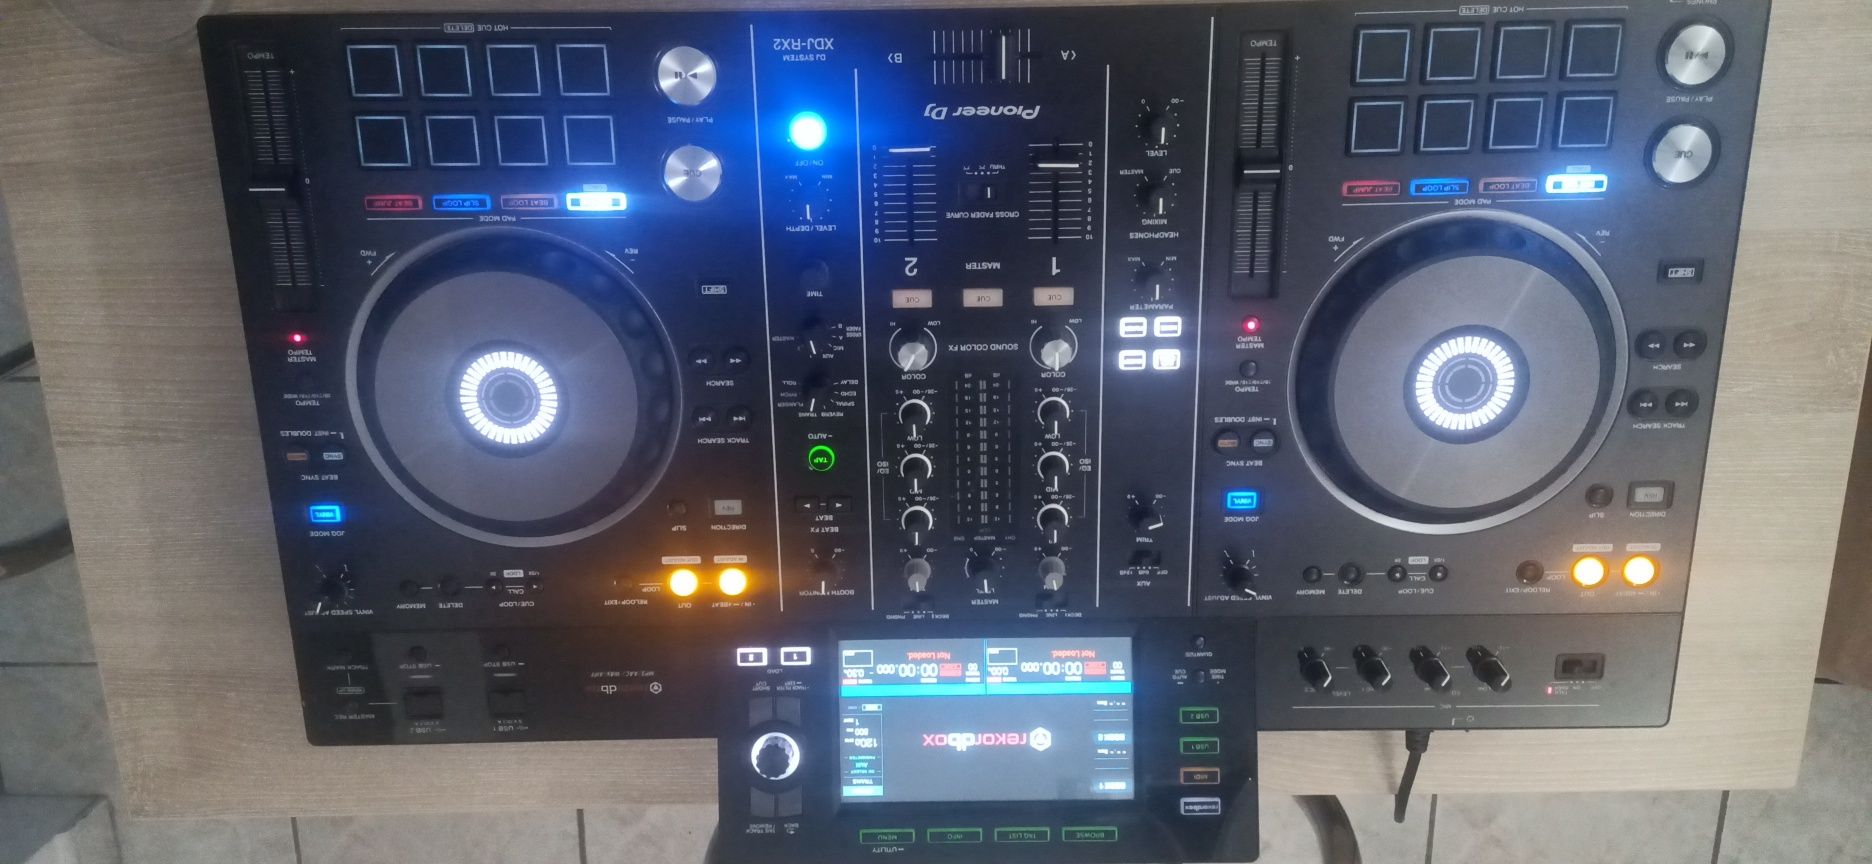 Consola DJ Pioneer xdj rx 2